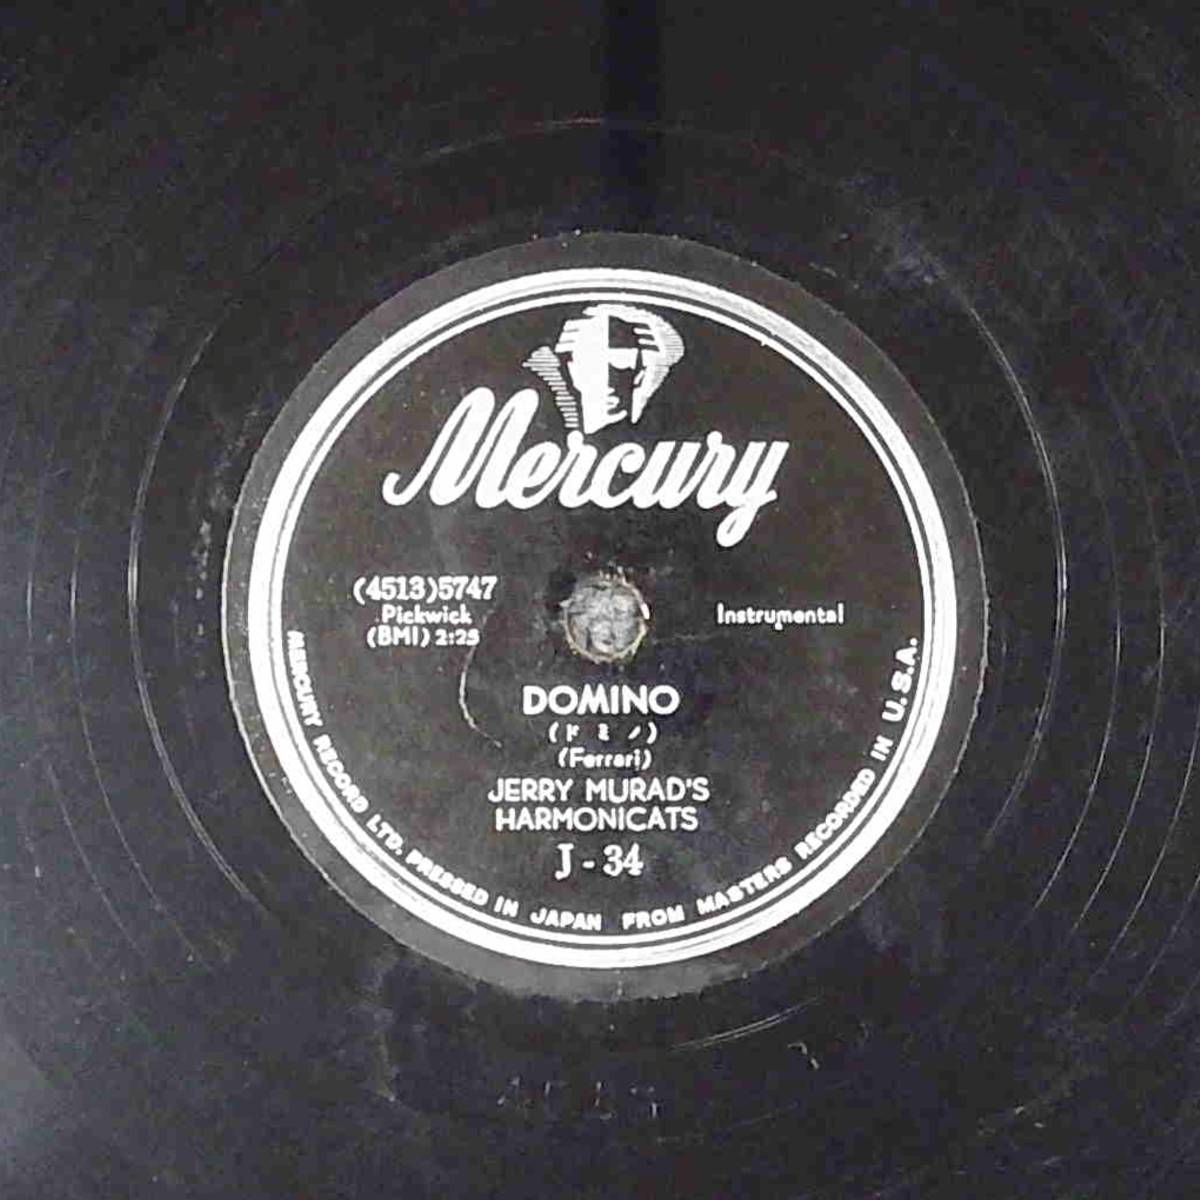 SP盤 レコード JERRY MURAD'S HARMONICATS / ドミノ / シャーメイン J-34 マーキュリー ny52_画像1